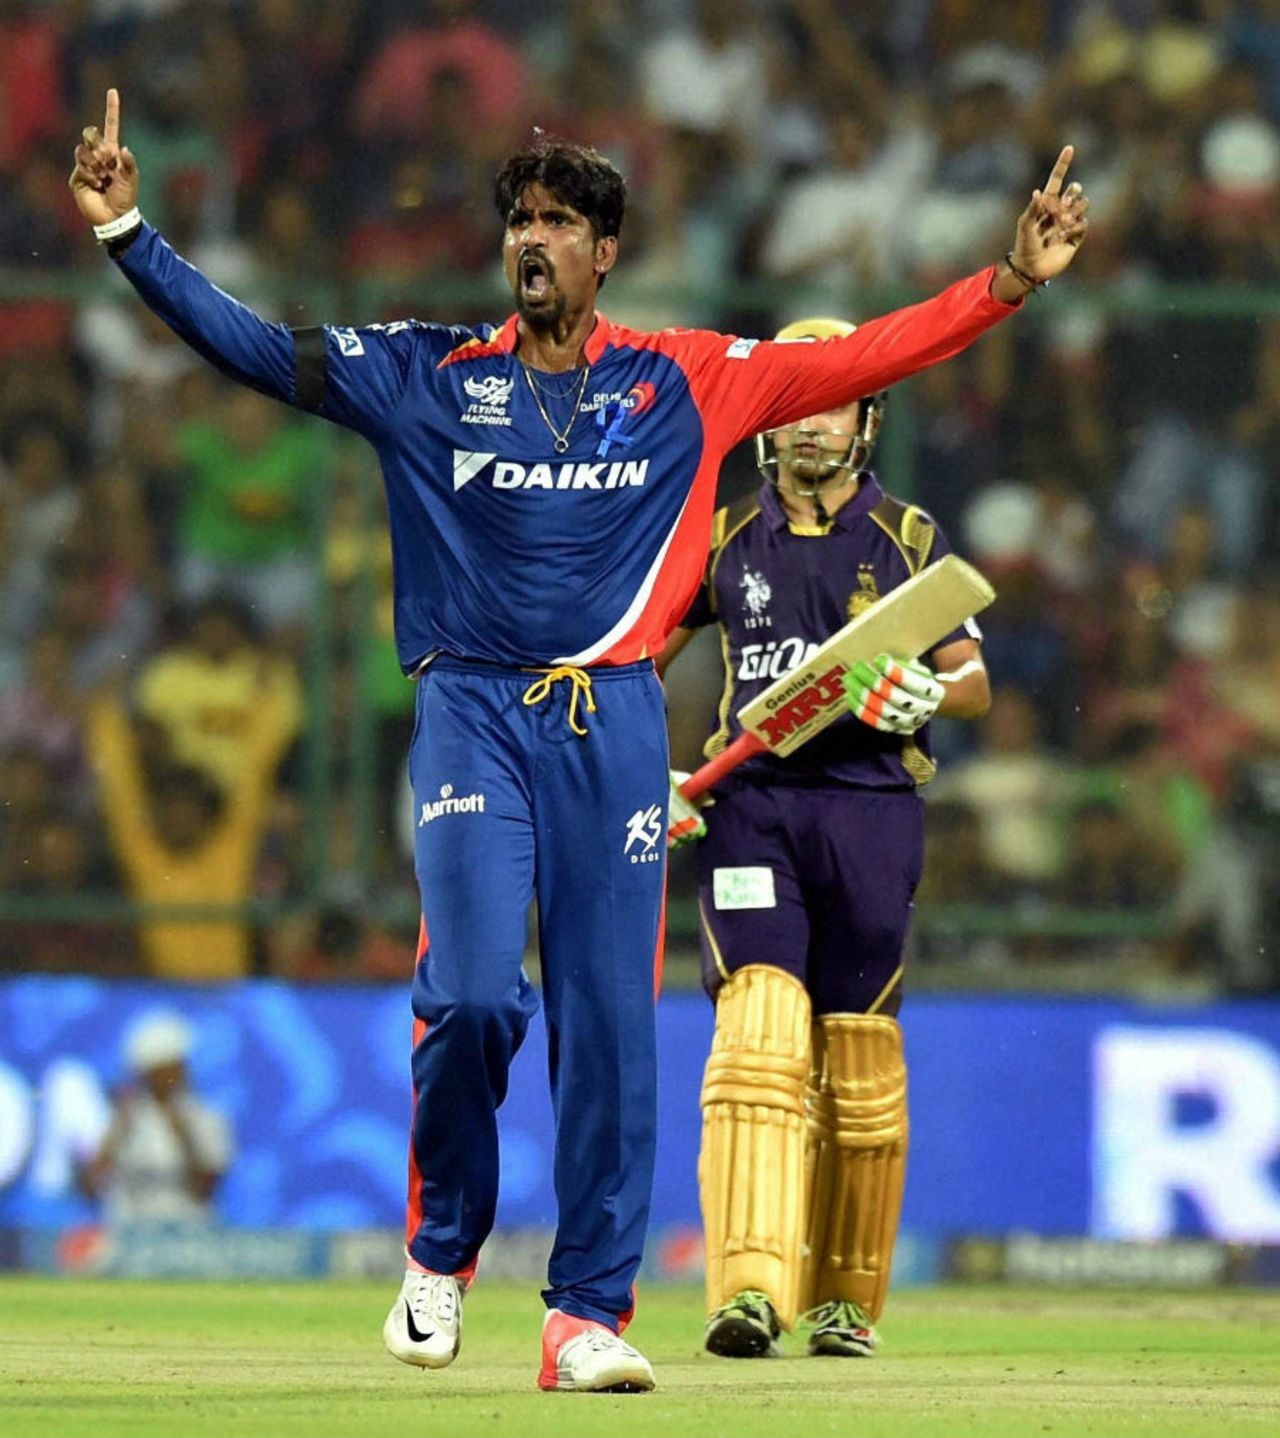 Domnic Muthuswami exults after picking a wicket, Delhi Daredevils v Kolkata Knight Riders, IPL 2015, Delhi, April 20, 2015